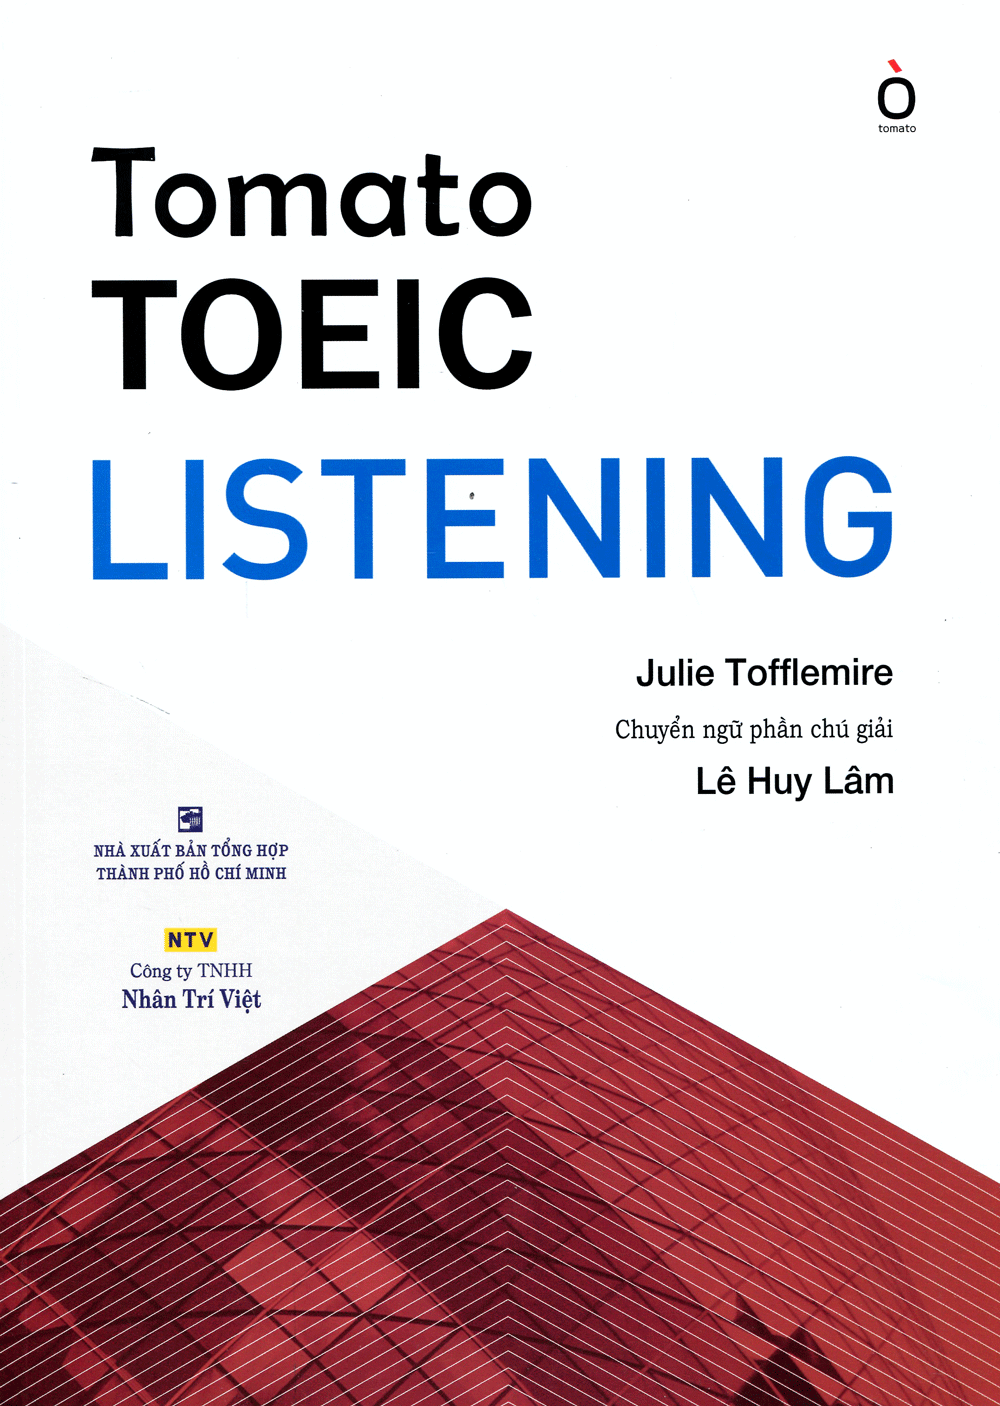 Tomato TOEIC Listening